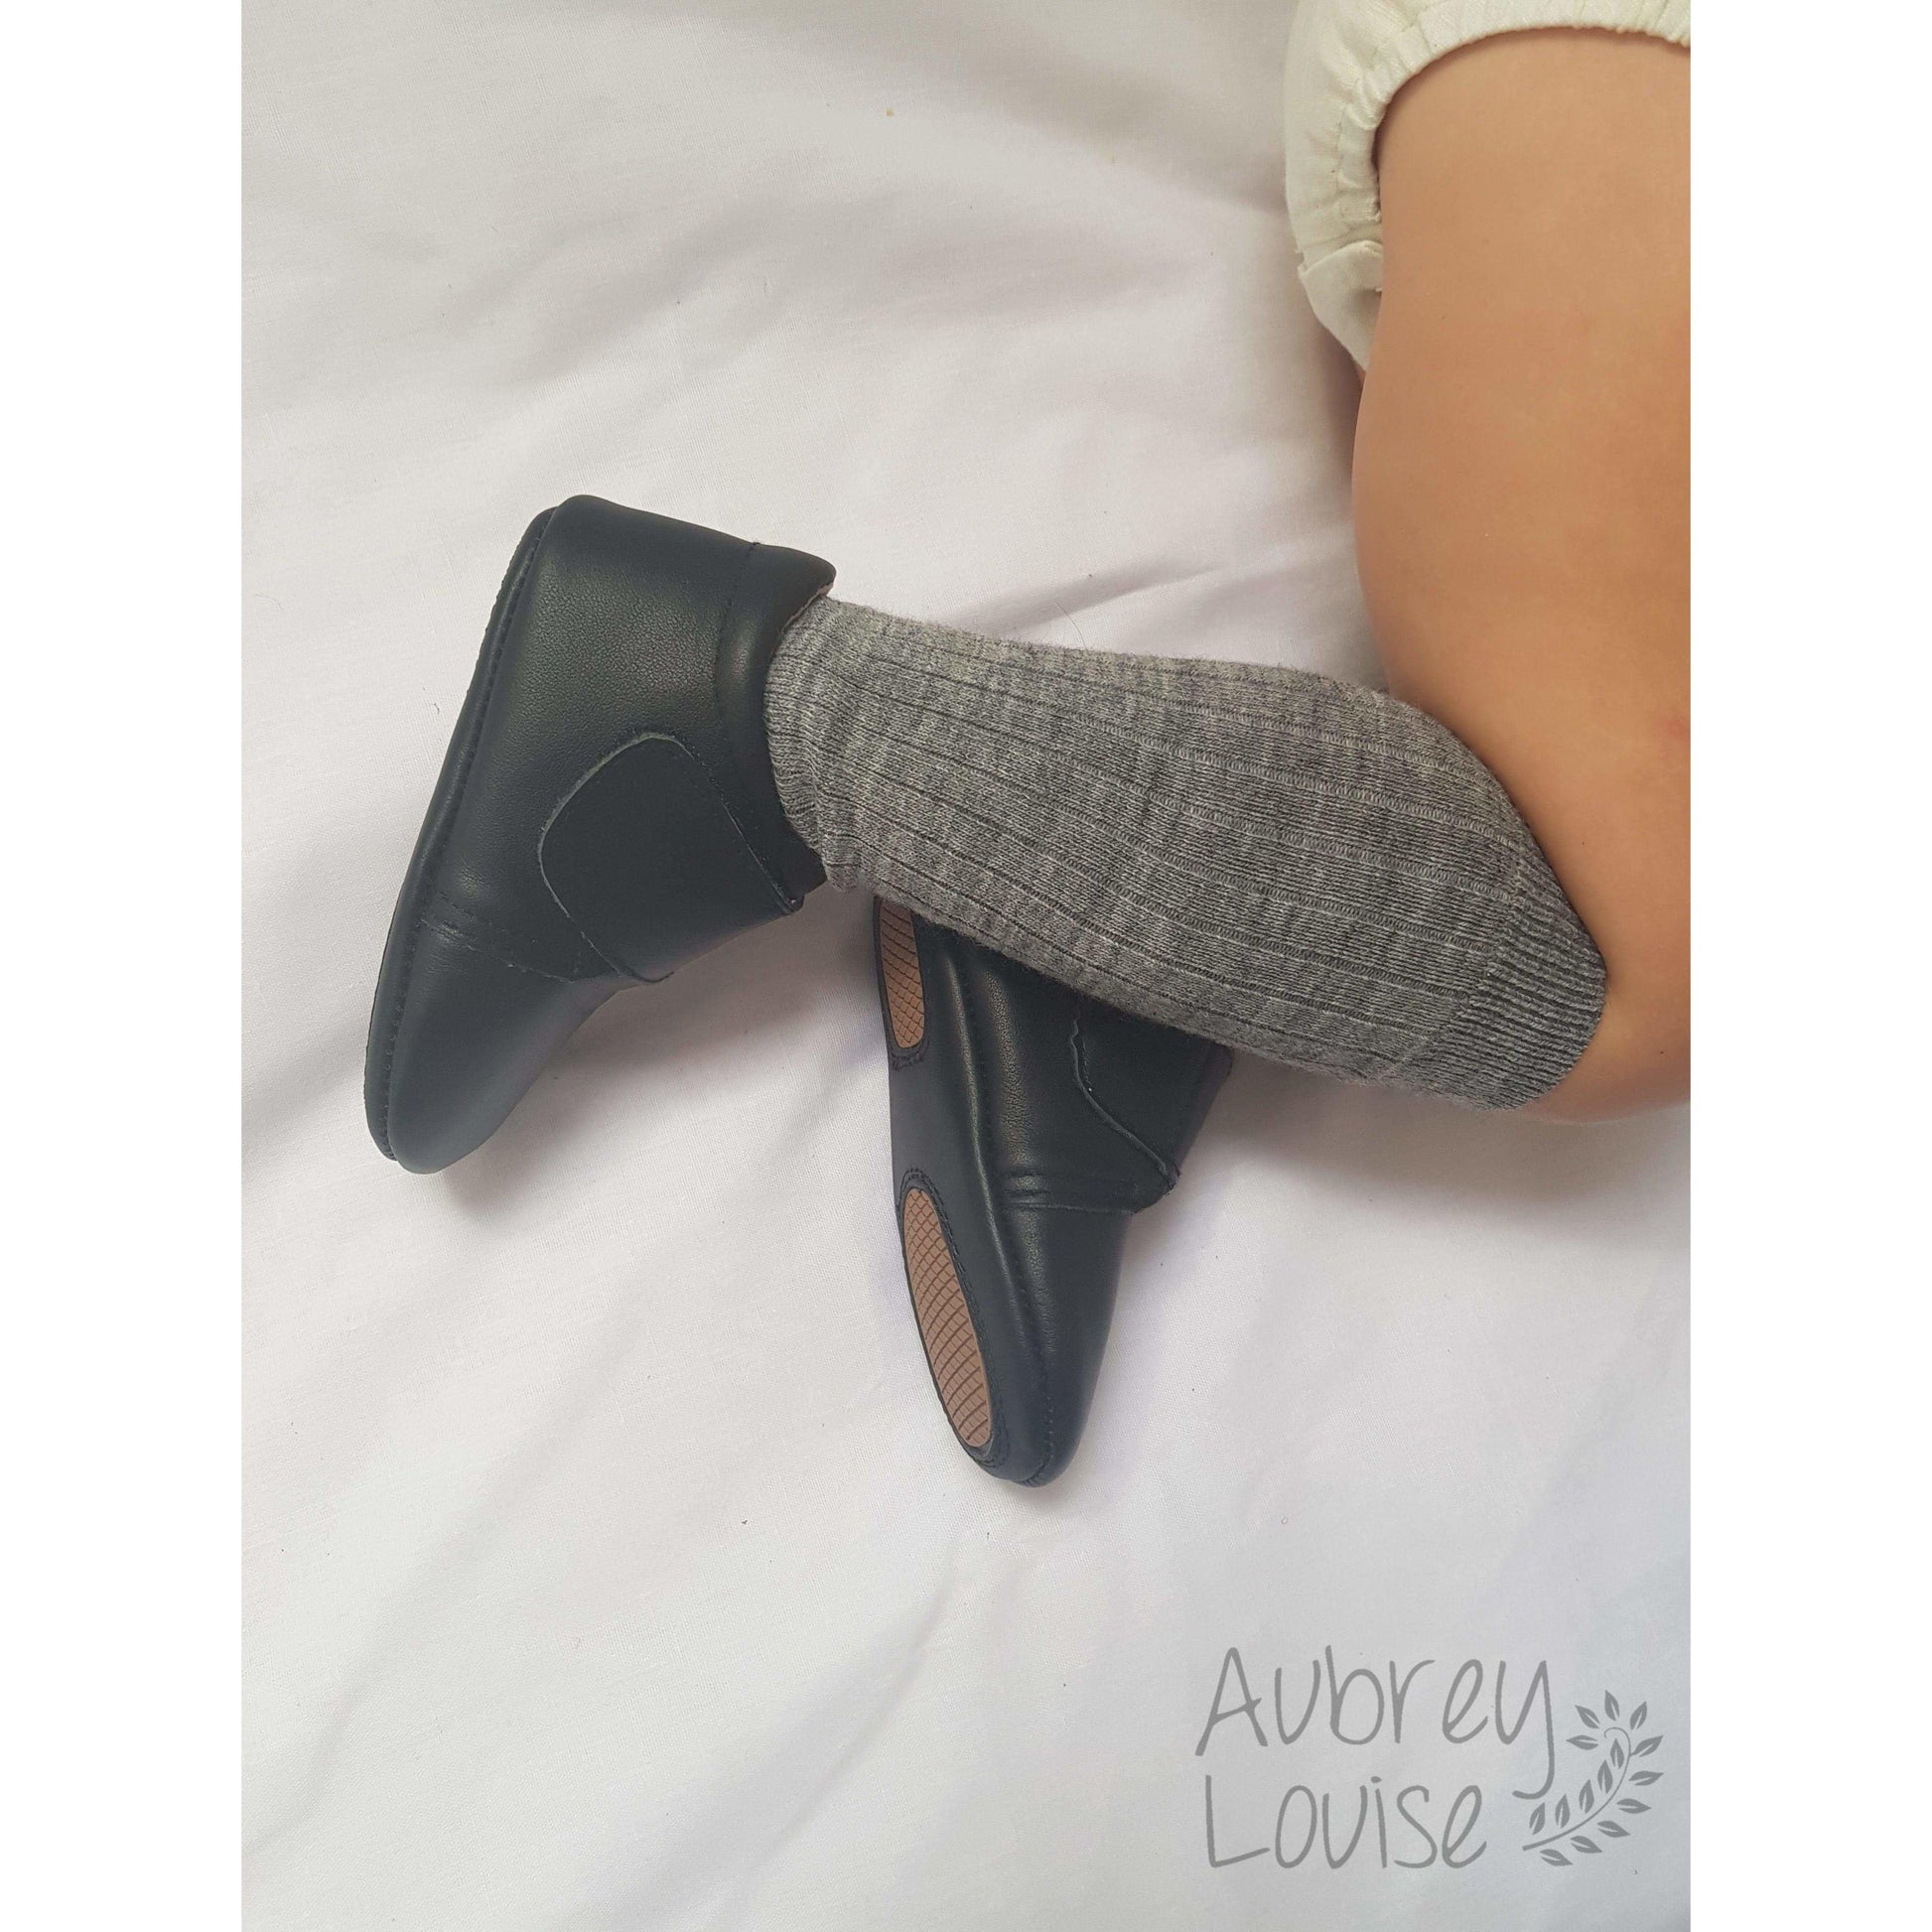 Aubrey Louise Shoes 2 Black Boot